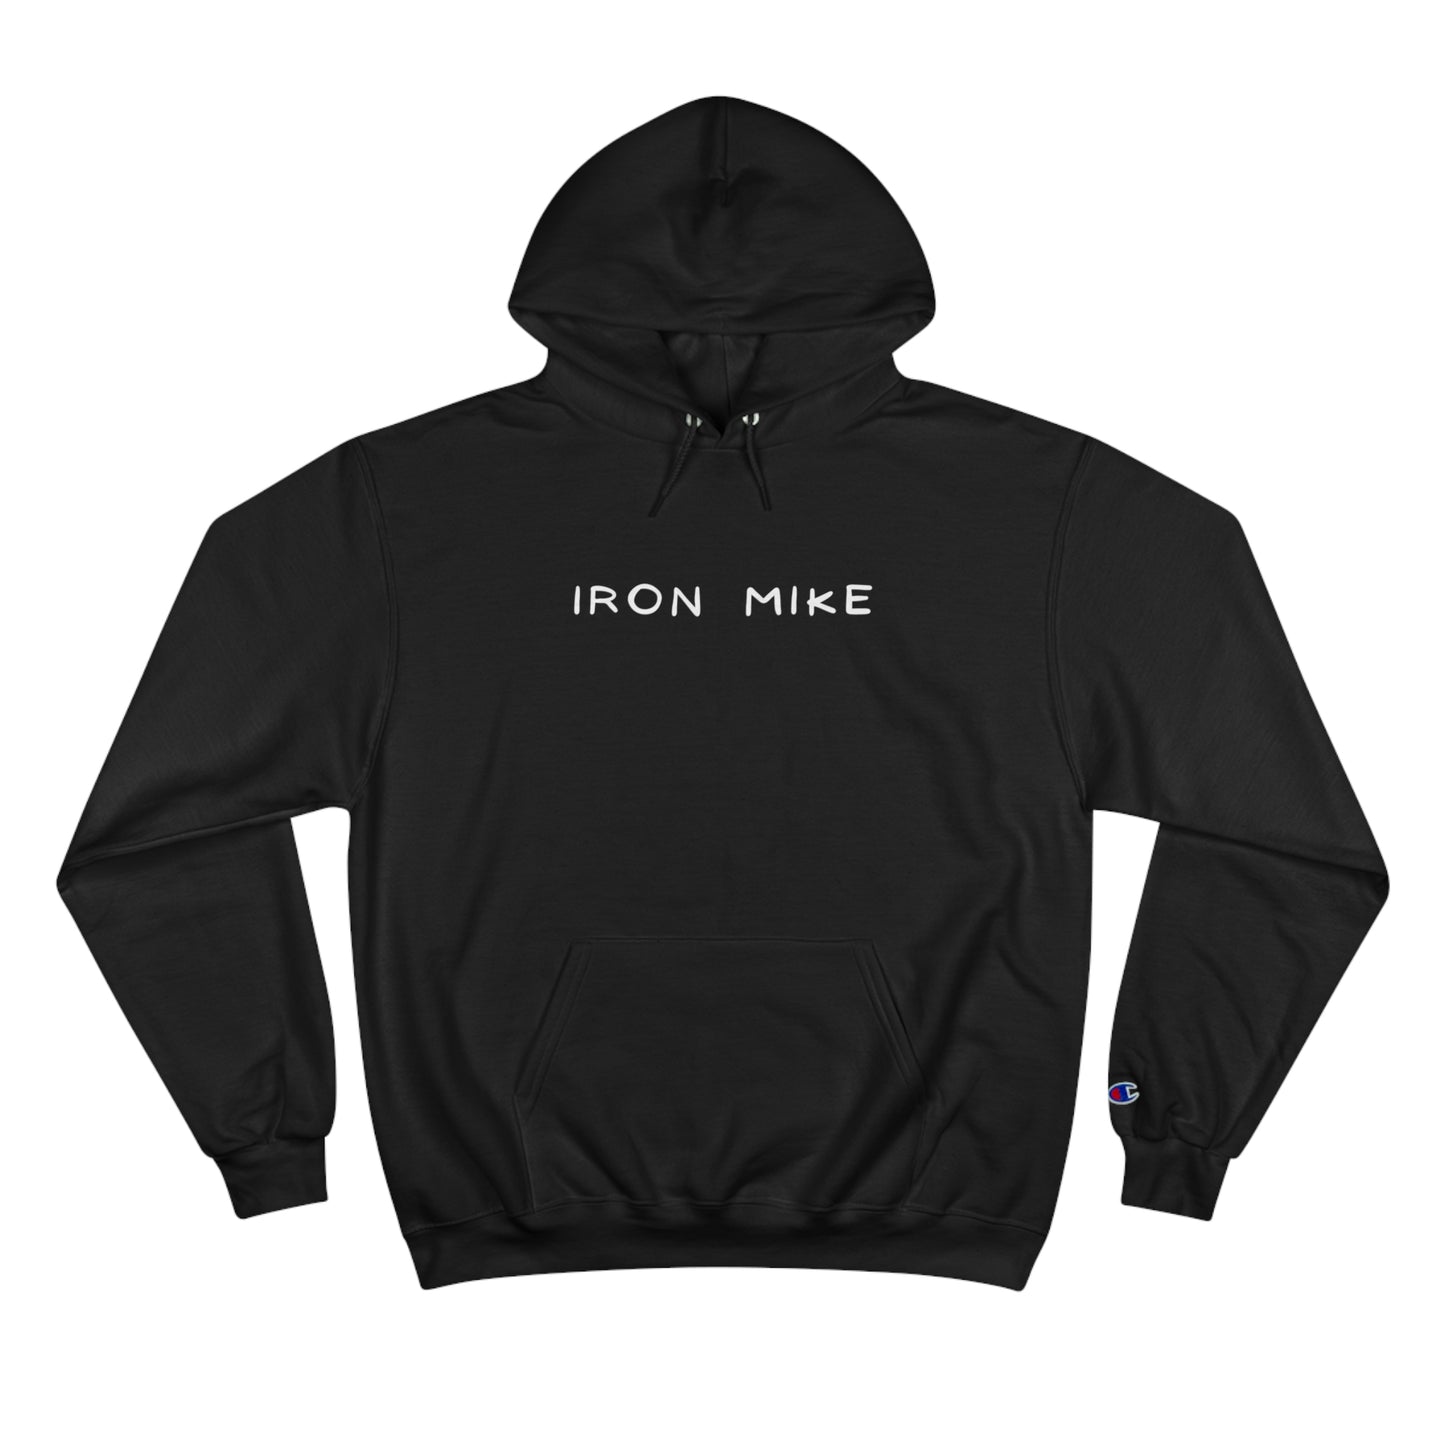 Iron Mike Champion Eco Hoodie - Sustainable, Warm Fleece with Iconic Branding